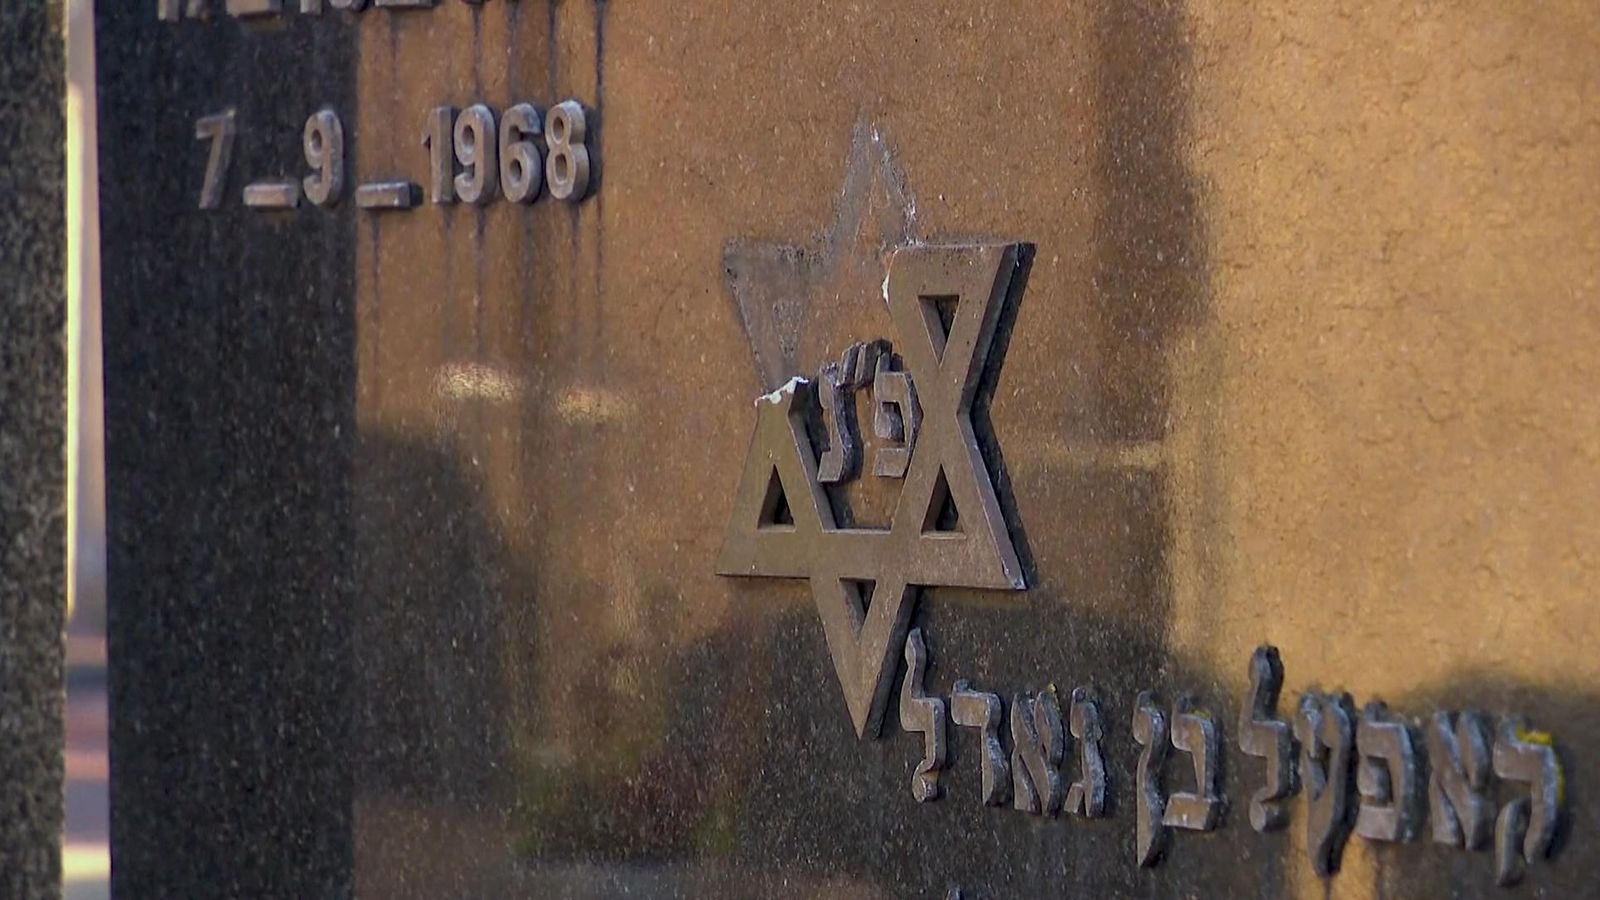 « C’est bien pire » : des Juifs de Belgique affirment que leurs amis ont fait leurs valises et sont prêts à fuir face à la montée de l’antisémitisme |  Nouvelles du monde